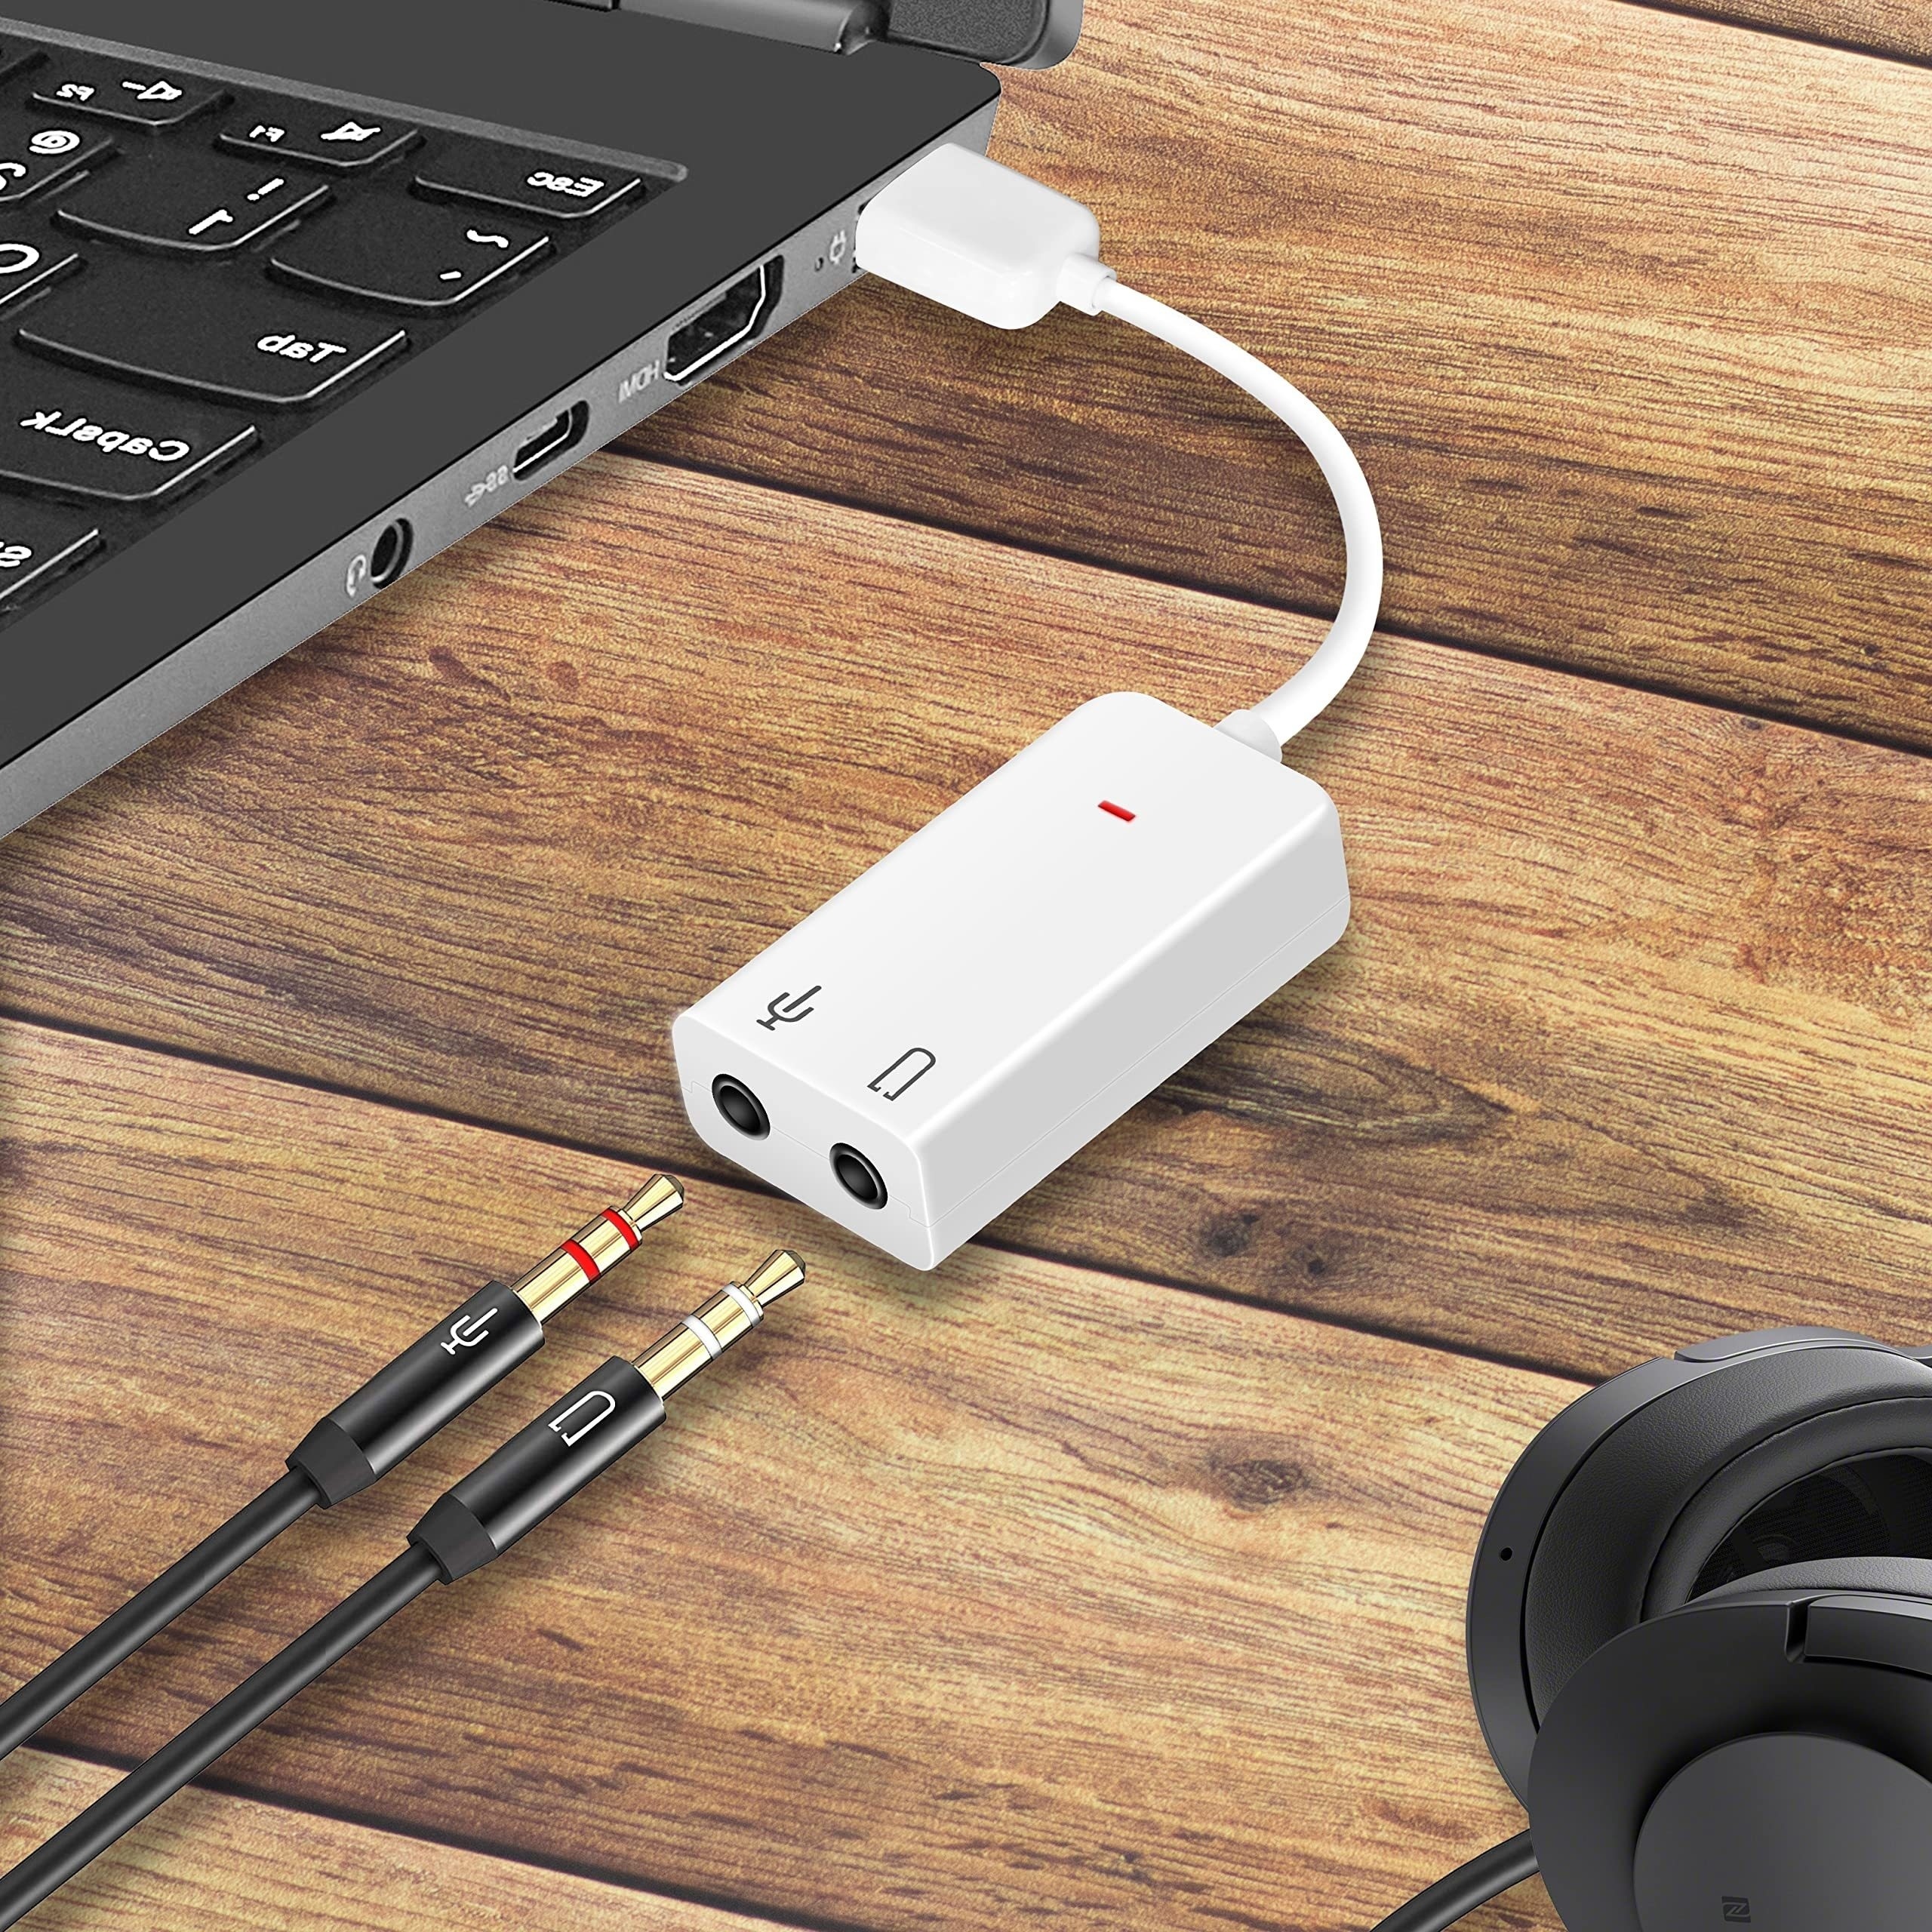 USB à 3.5mm Audio Jack Adaptateur, Convertisseur de Carte Son Externe  Compatible avec Casque, PC, Ordinateur Portable, Mac, Ordinateurs de Bureau